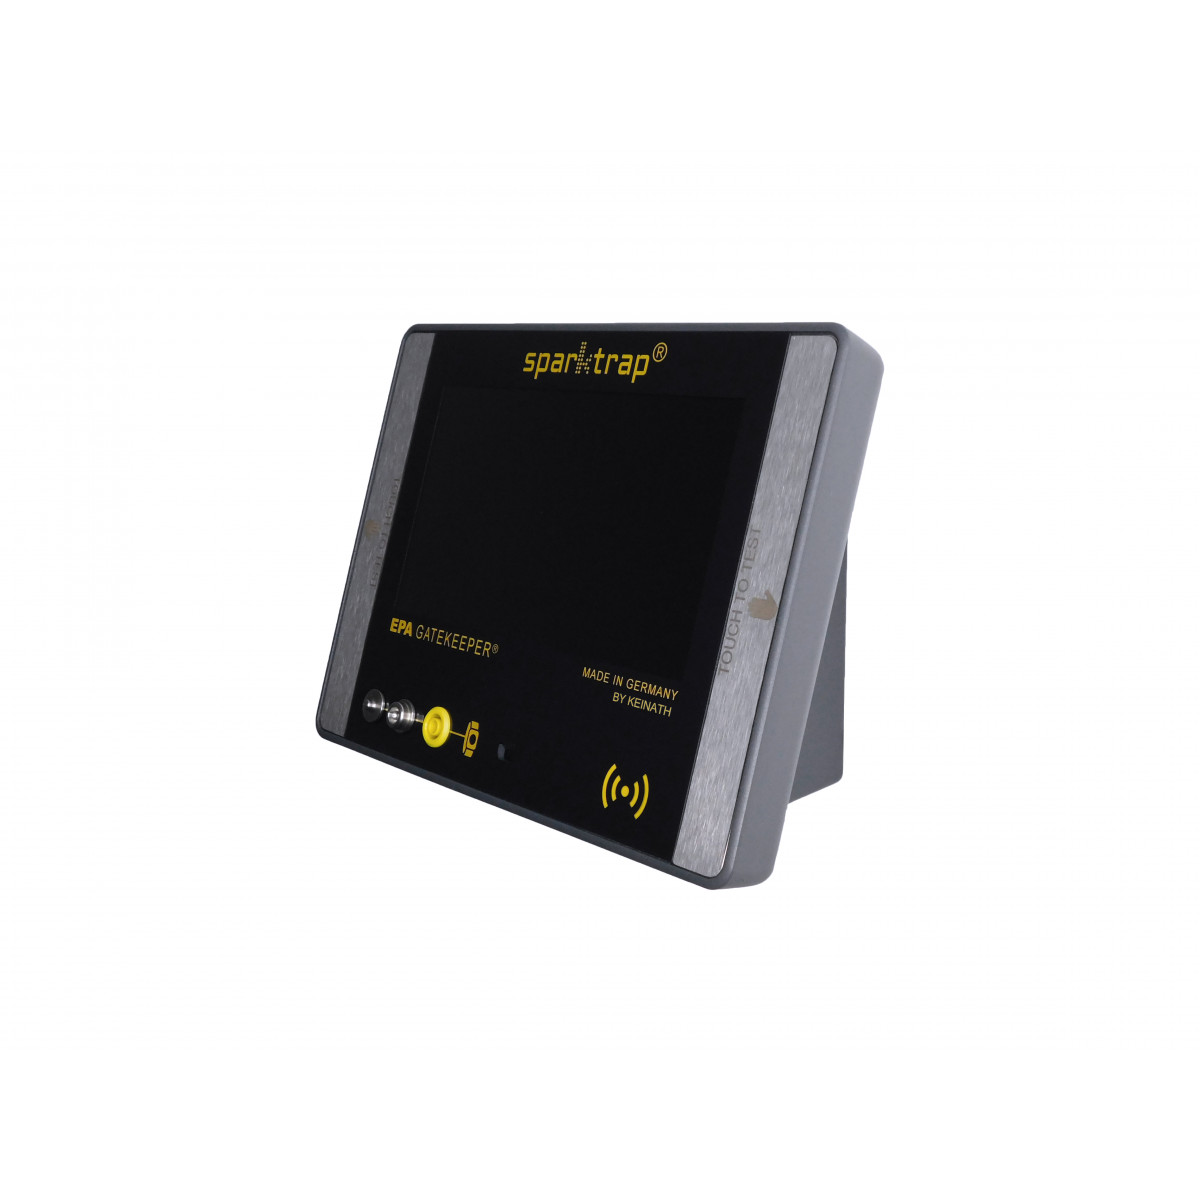 EPA GATEKEEPER® net +/LiveData mit LAN-Schnittstelle, RFID-Kartenleser und MQTT-Client inkl. Netzteil und Schuhwerkelektrode